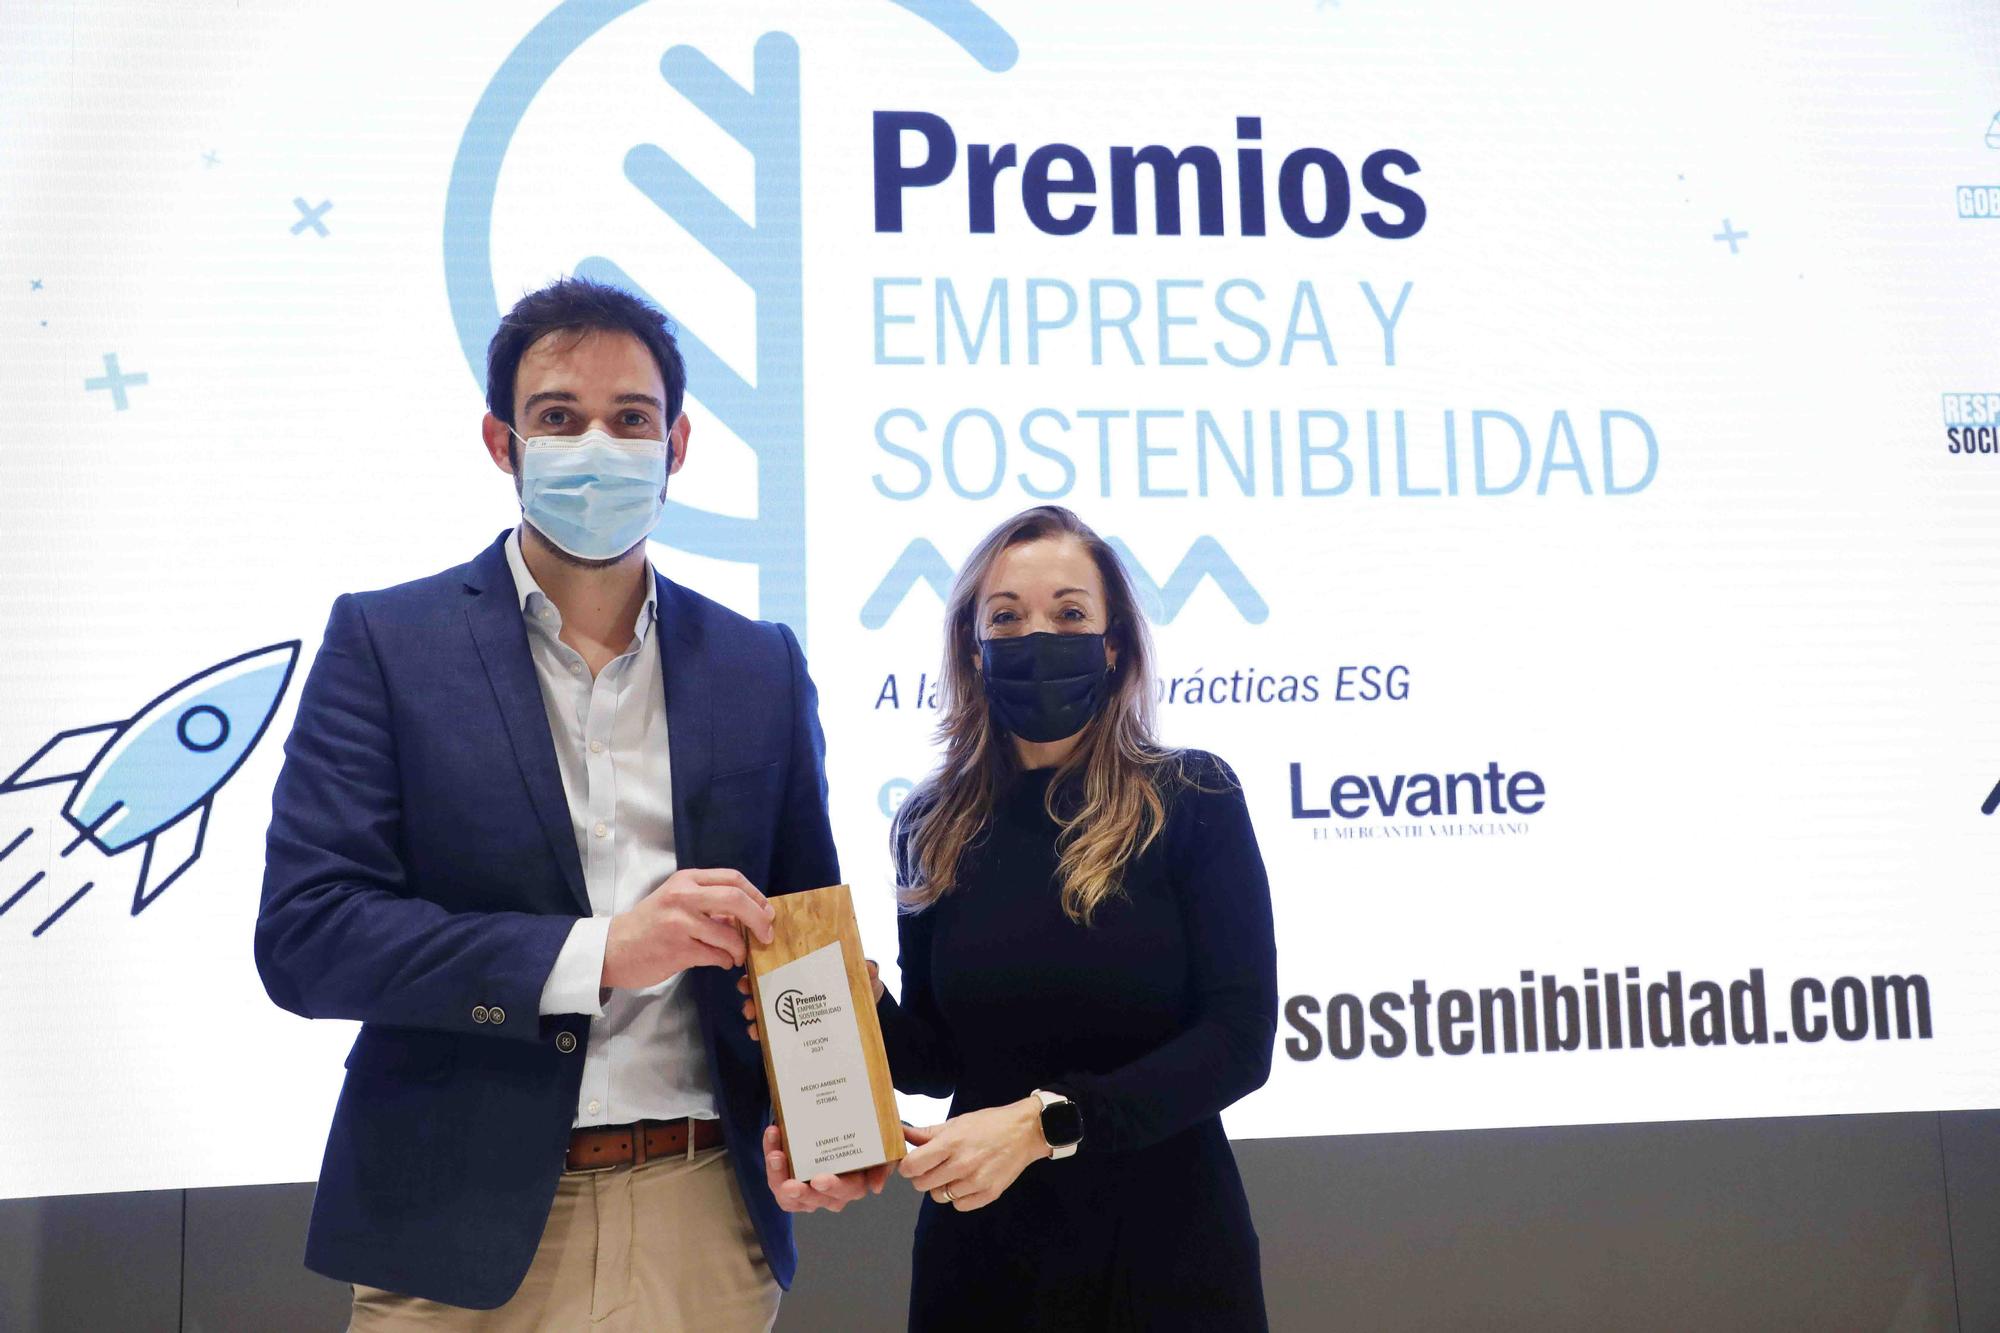 Premios Empresa y Sostenibilidad Sabadell